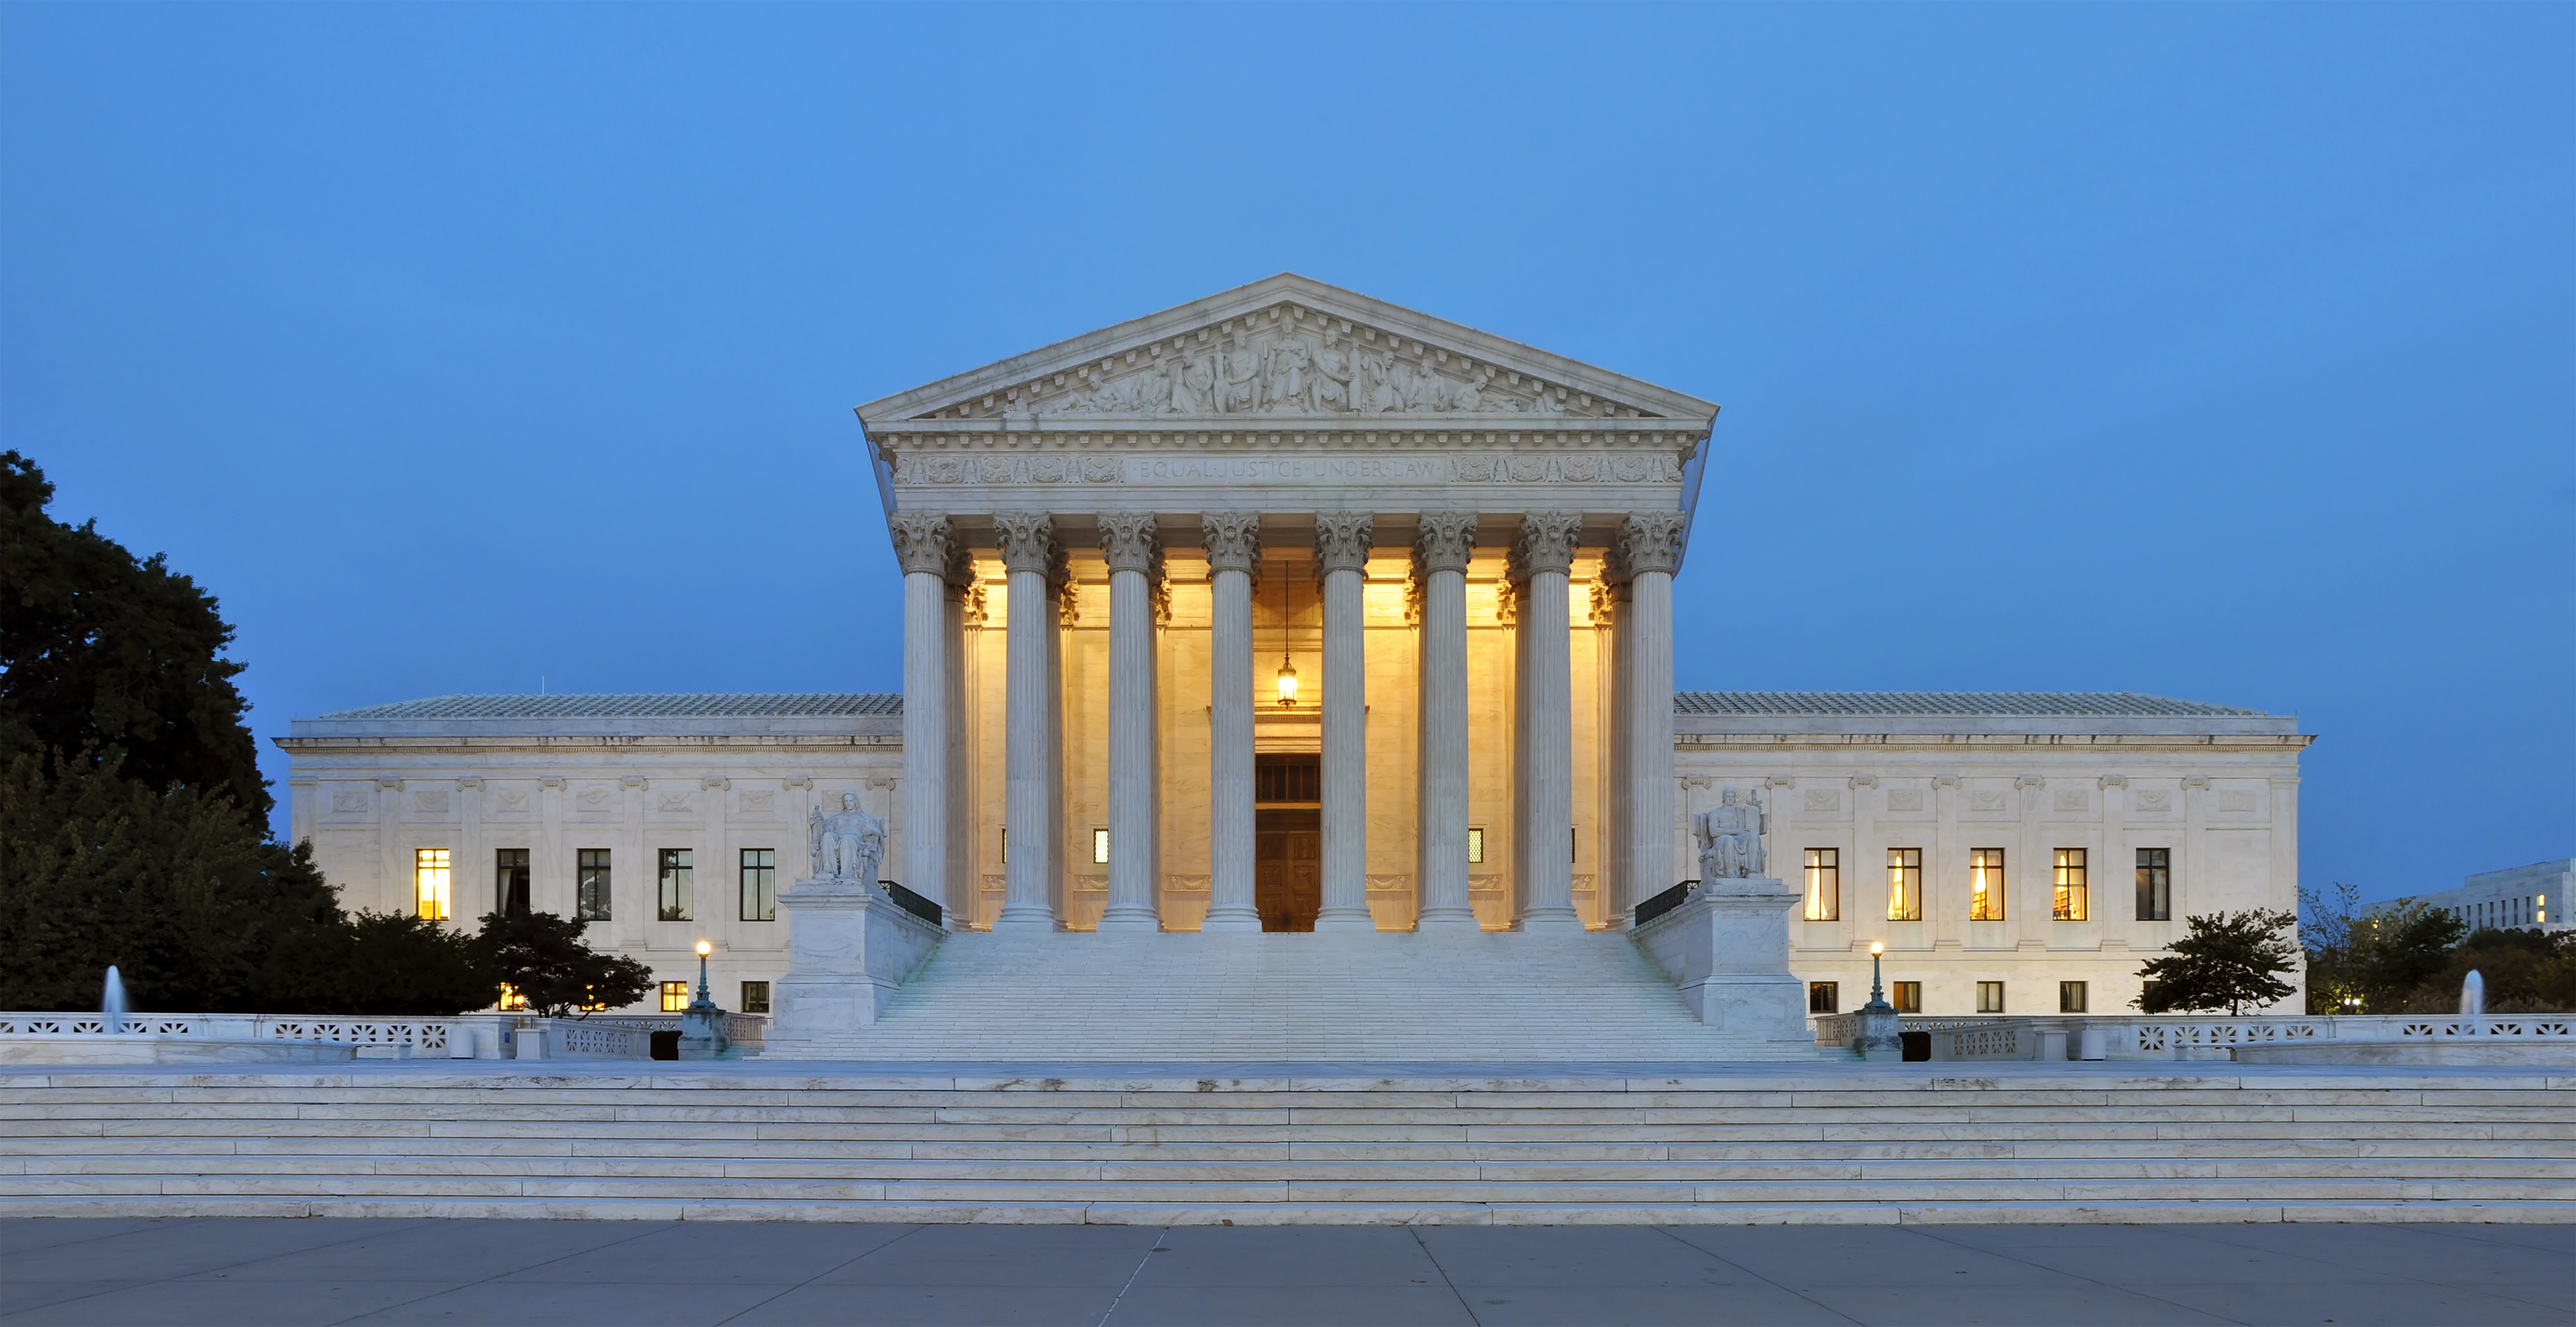 US Supreme court steps at dusk